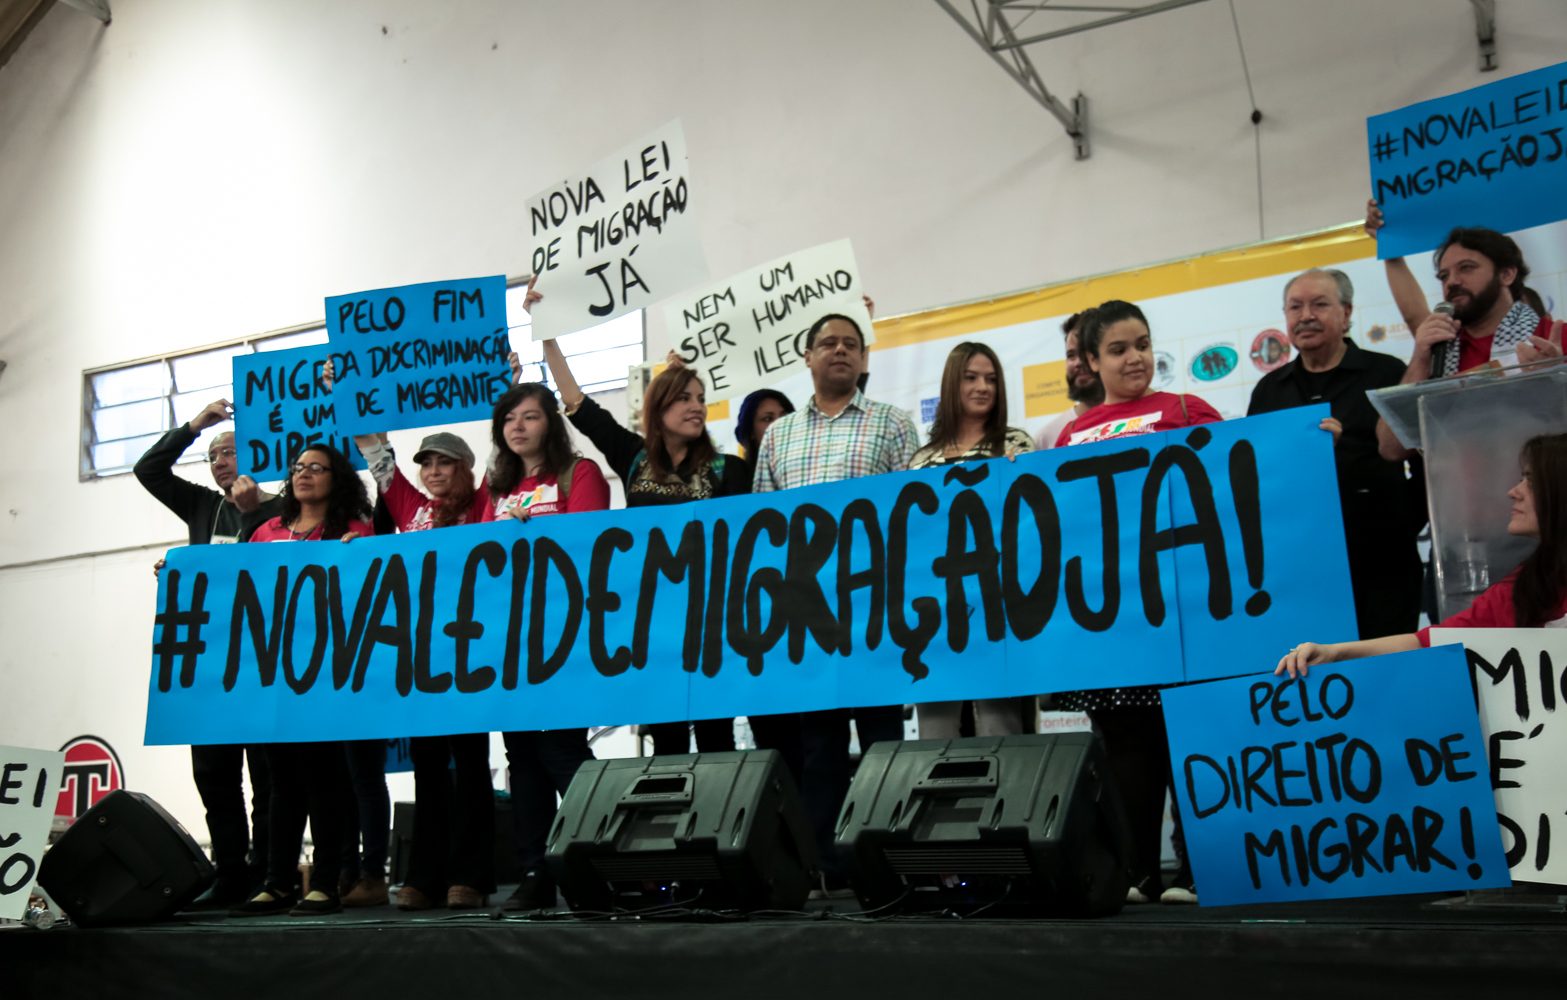 Participantes do VII Fórum Social Mundial das Migrações erguem cartazes da campanha por uma nova lei de migração no Brasil. Foto: João Paulo Brito/Conectas